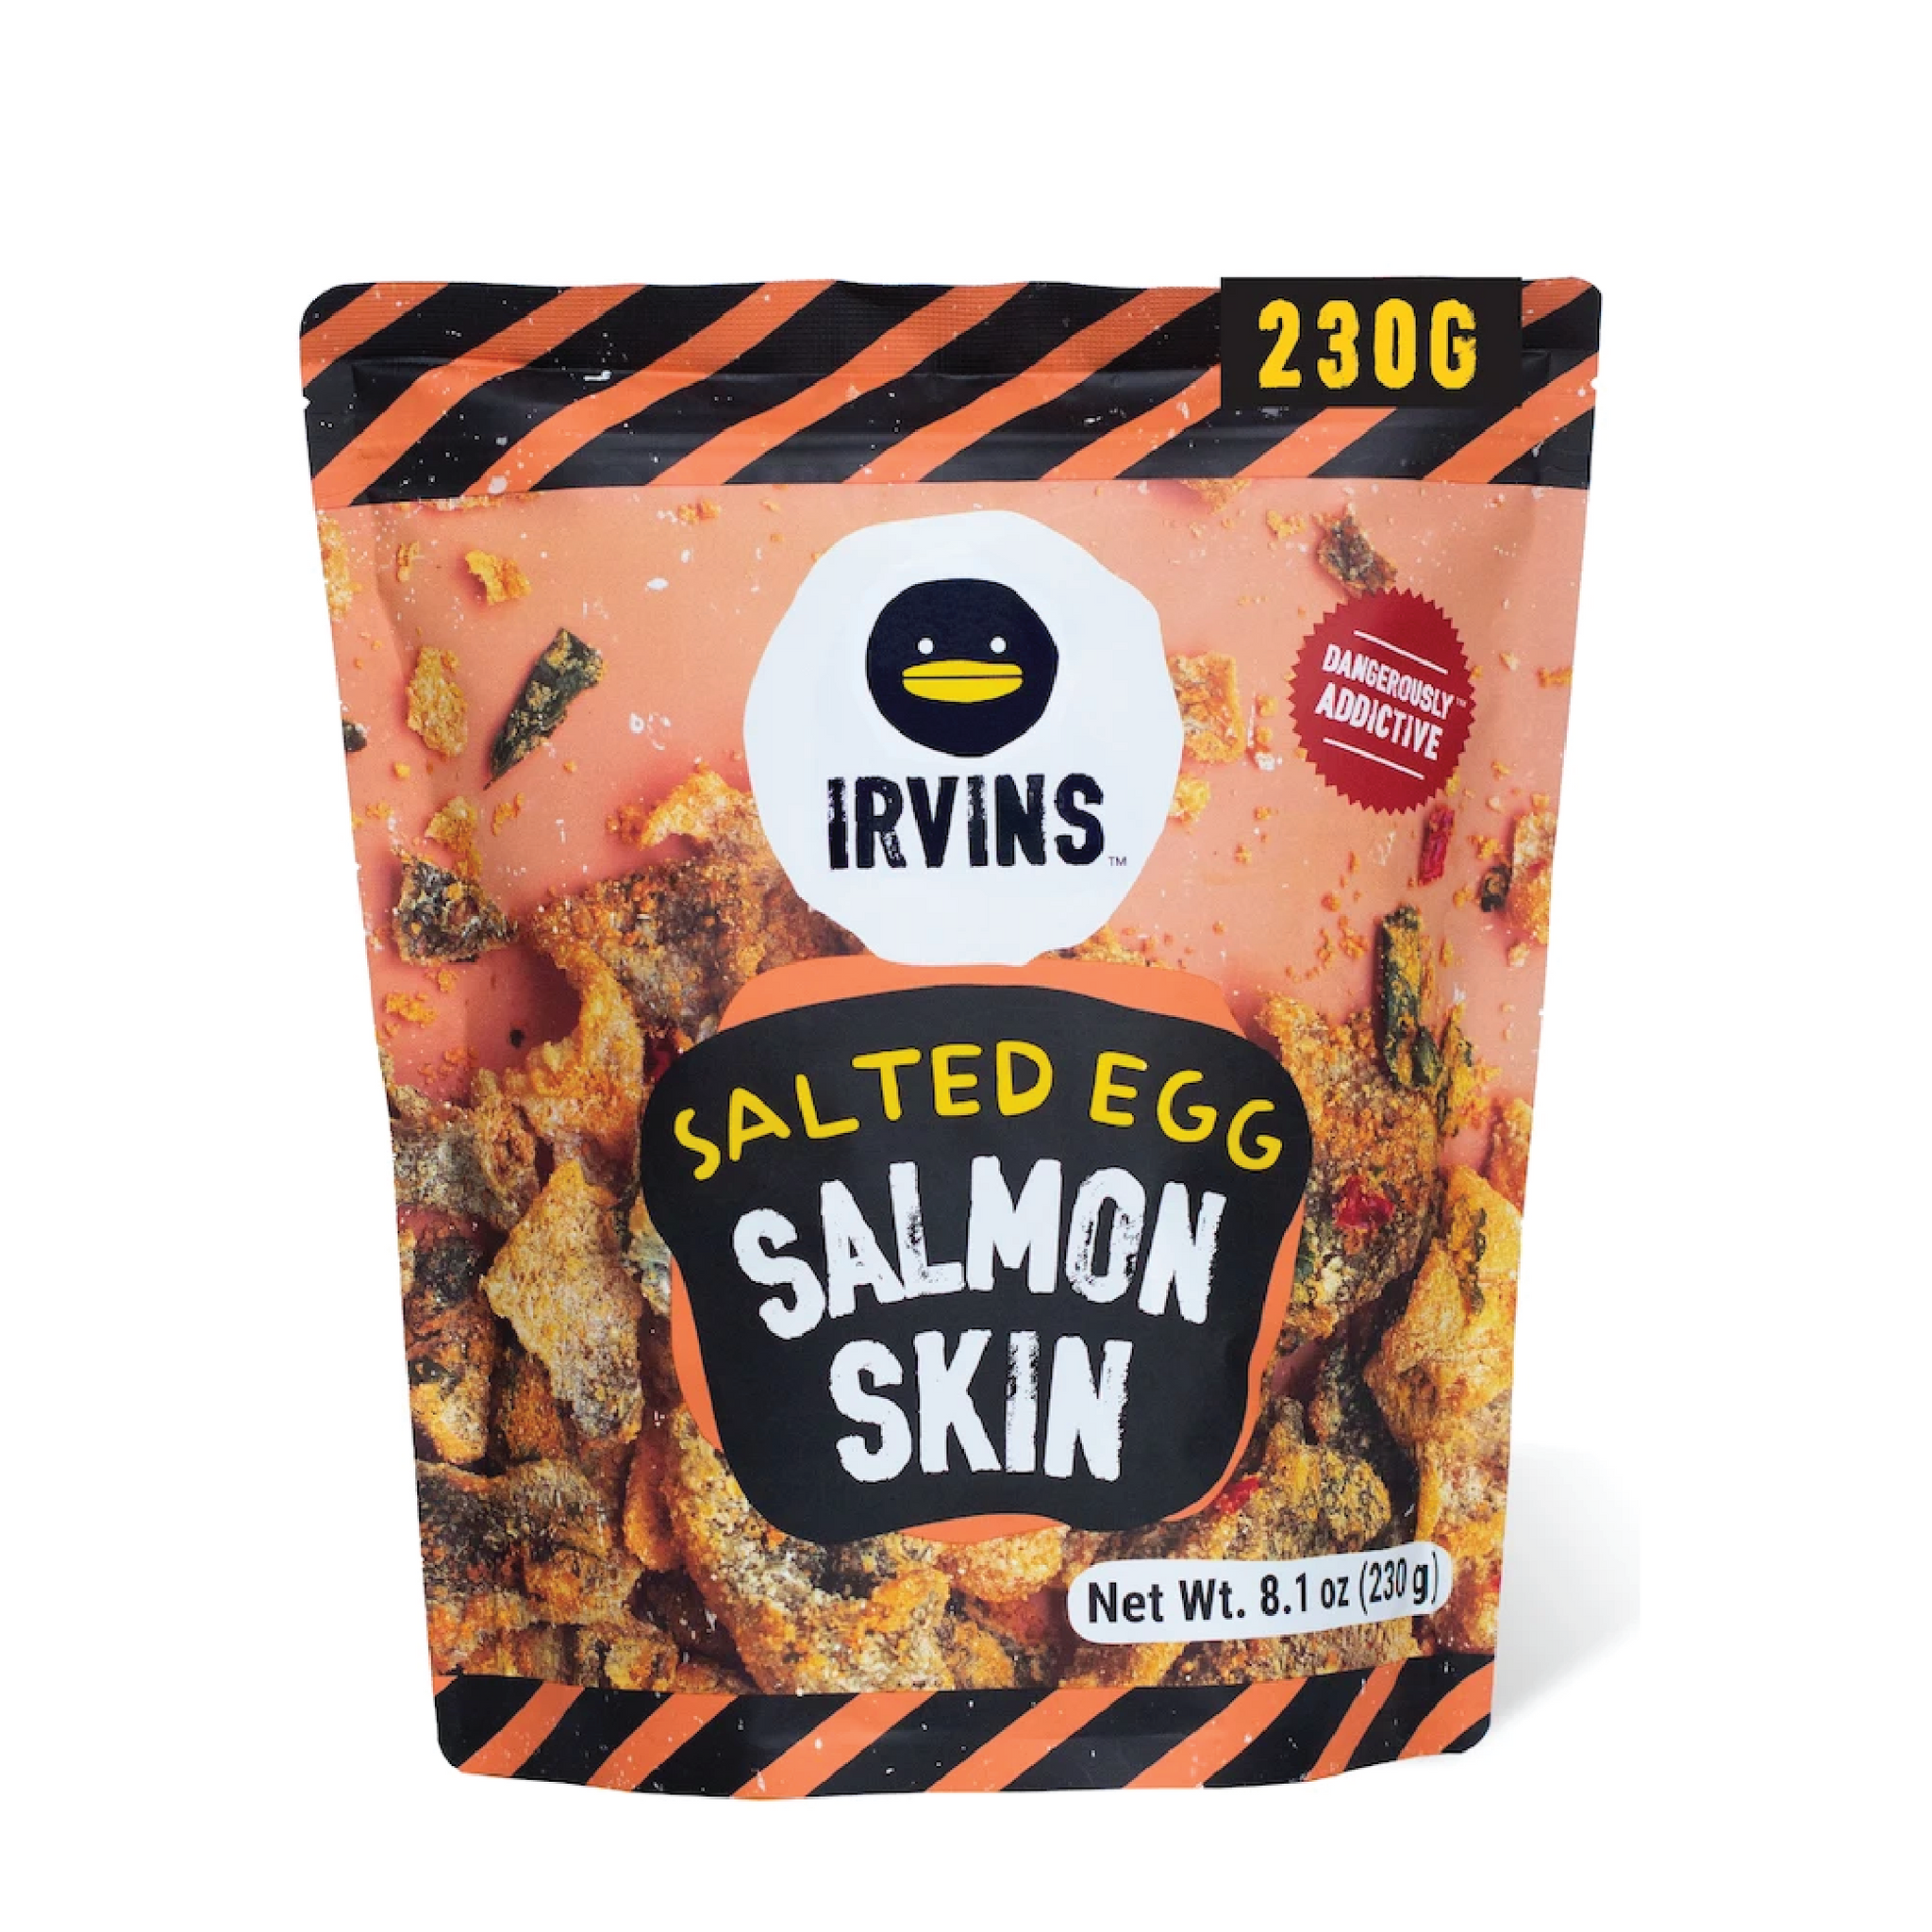 IRVINS Salted Egg Salmon Skin 105G 黑鴨 鹹蛋黃三文魚皮 80G